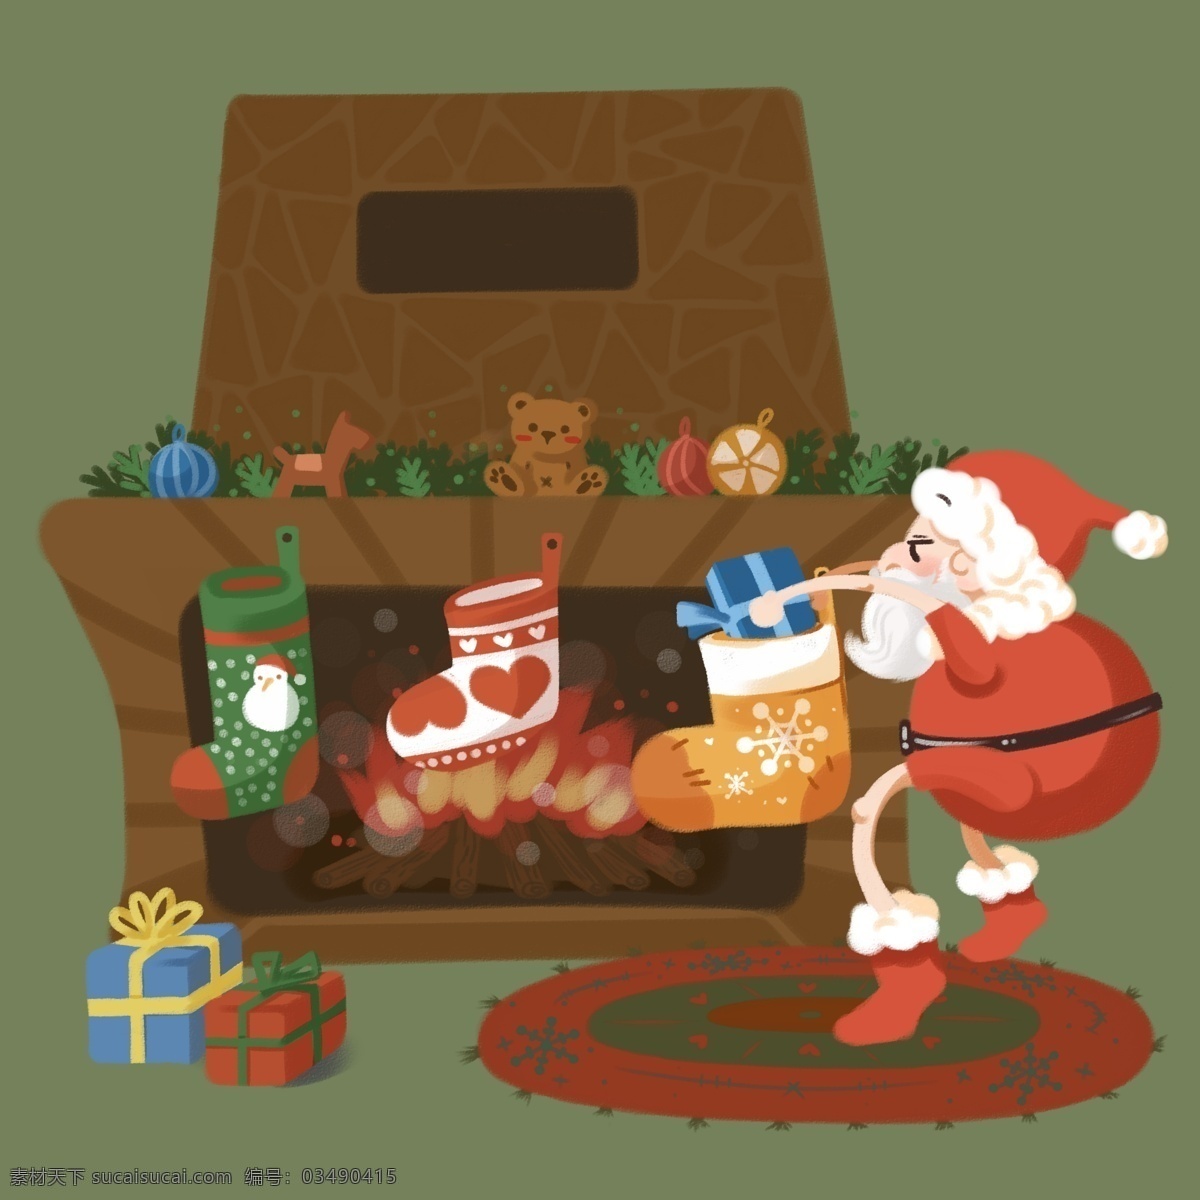 手绘 圣诞 平安夜 圣诞老人 偷 放 礼物 可爱 袜子 地毯 萌 圣诞袜 礼物盒子 火炉 壁炉